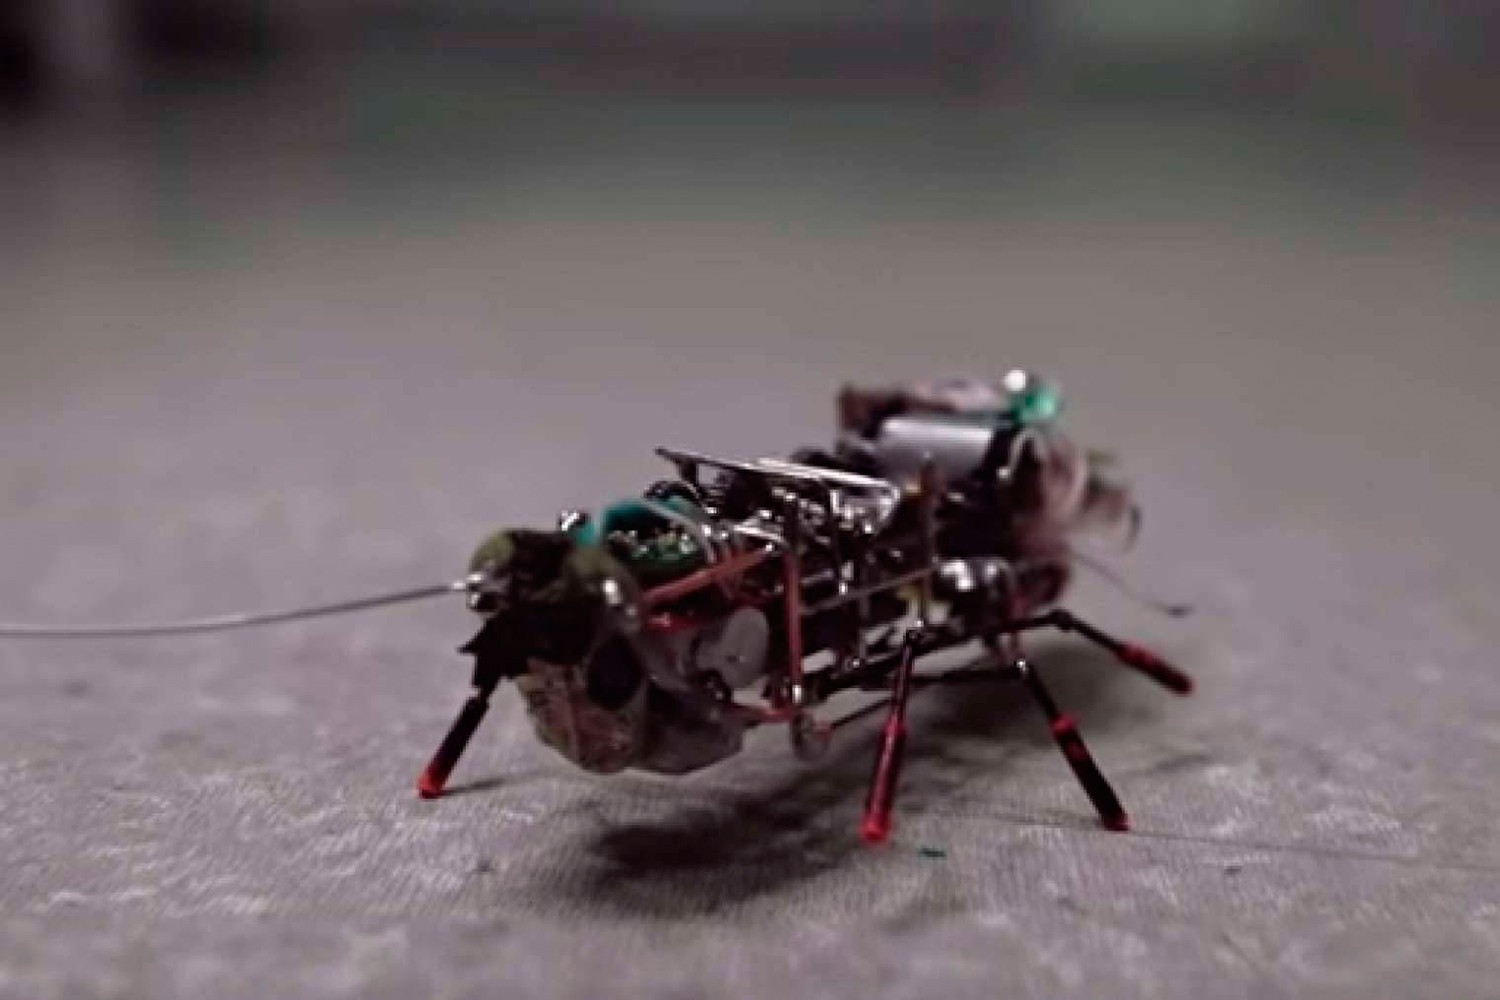 Rusos inventan una cucaracha robot ideal para misiones secretas